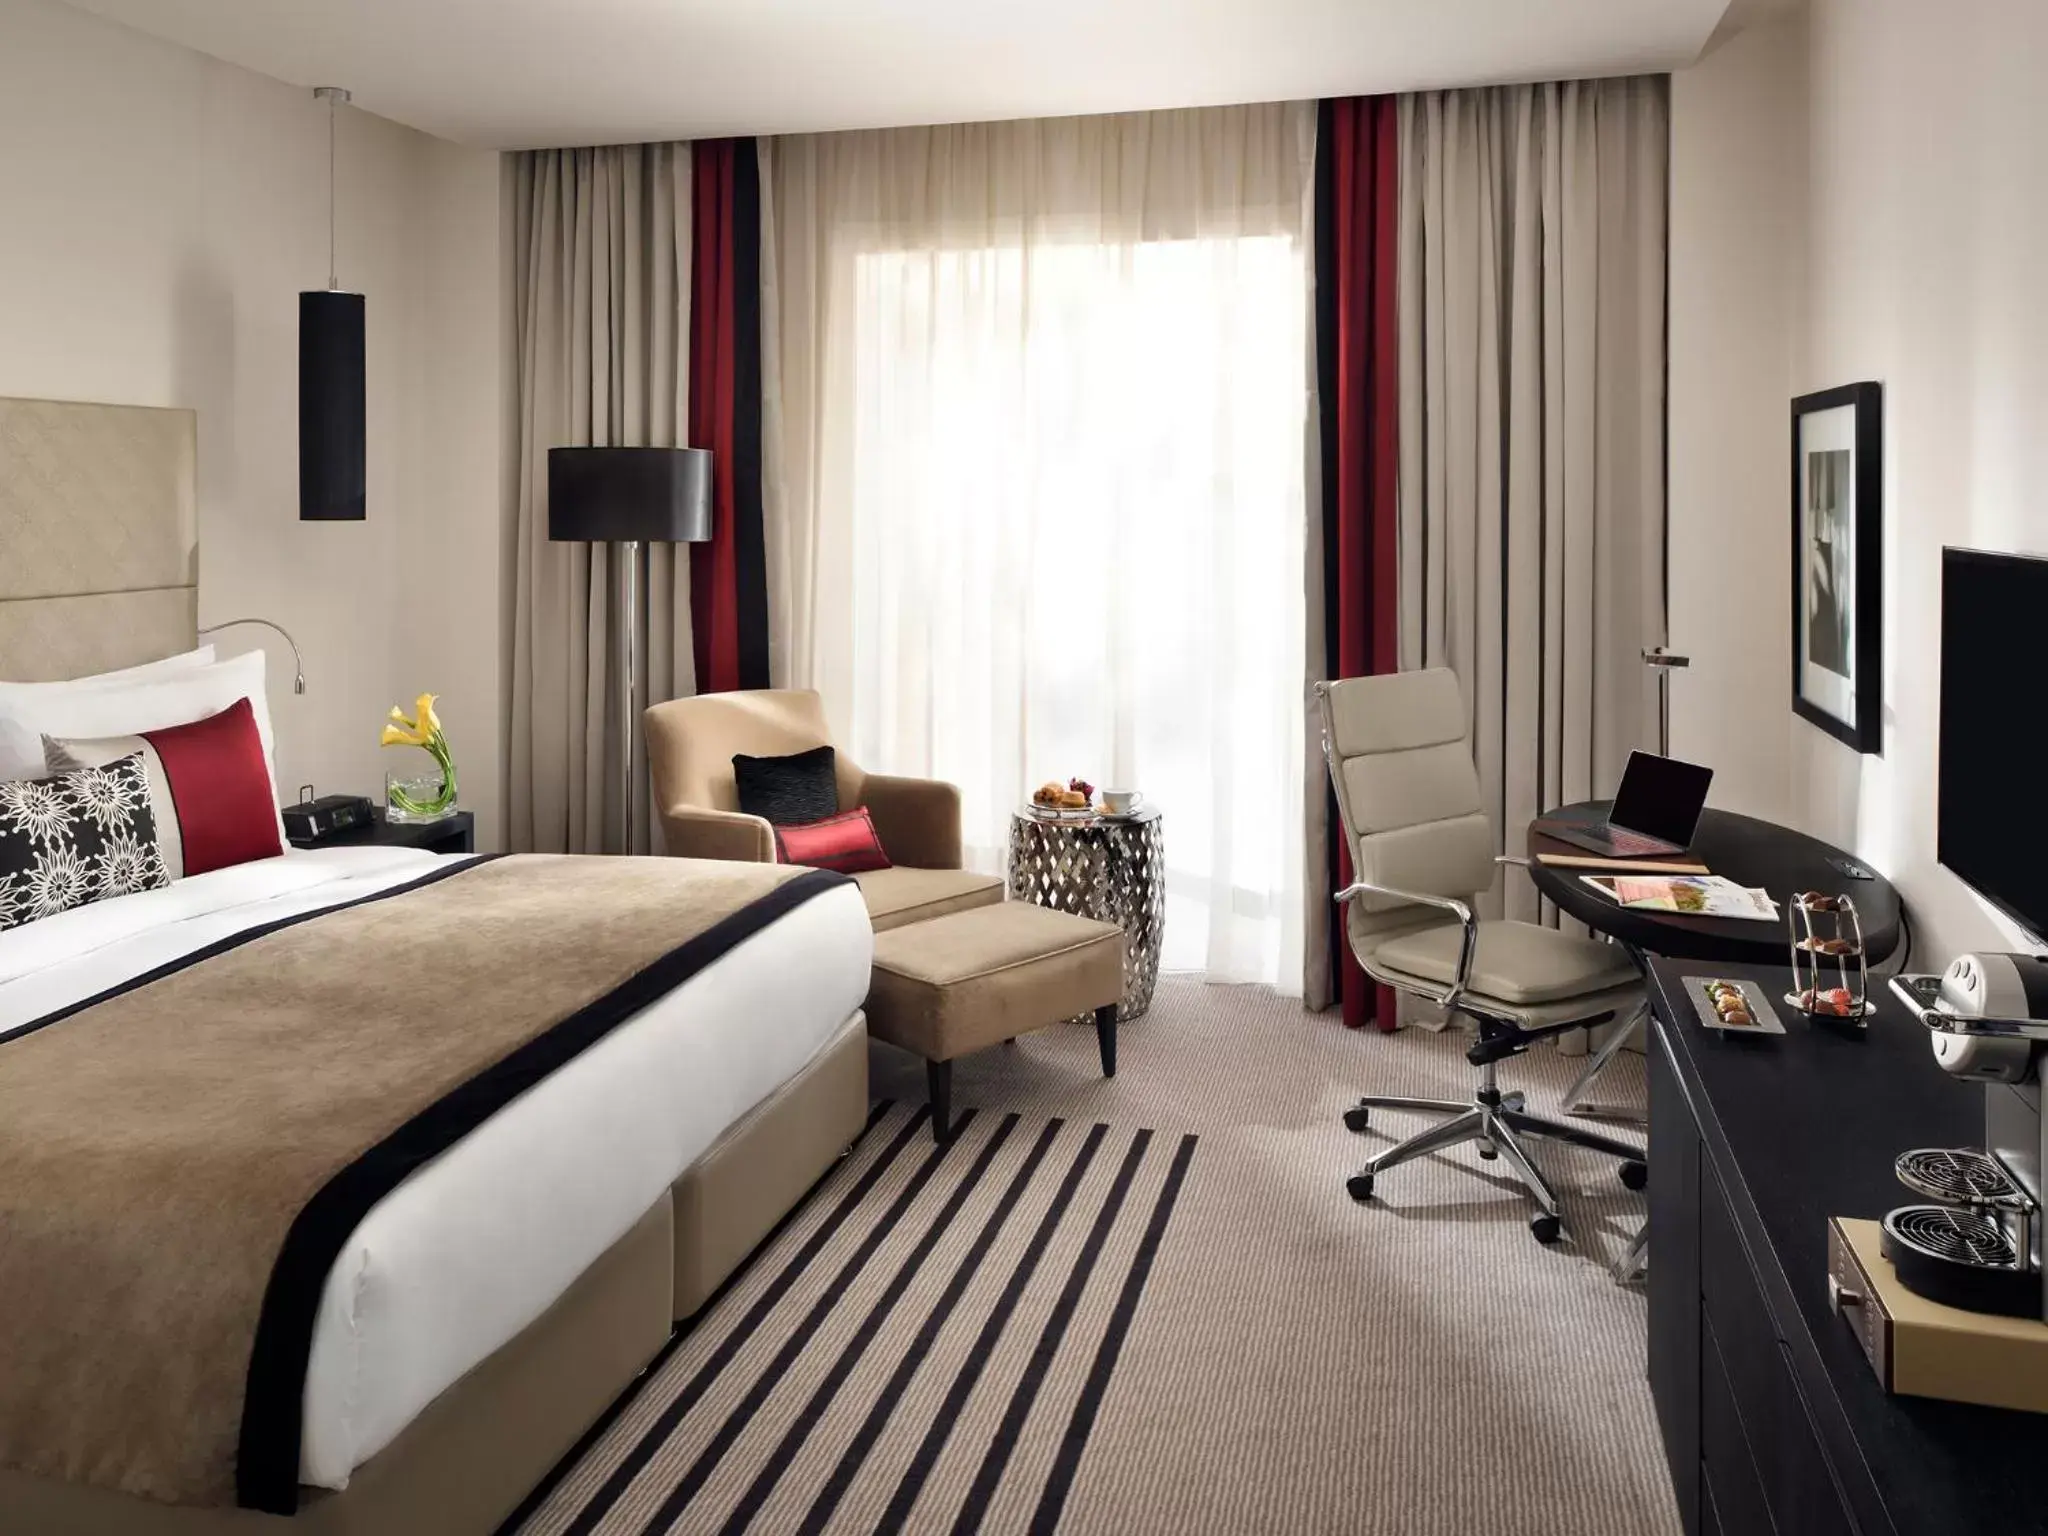 Bed, Room Photo in voco - Riyadh, an IHG Hotel